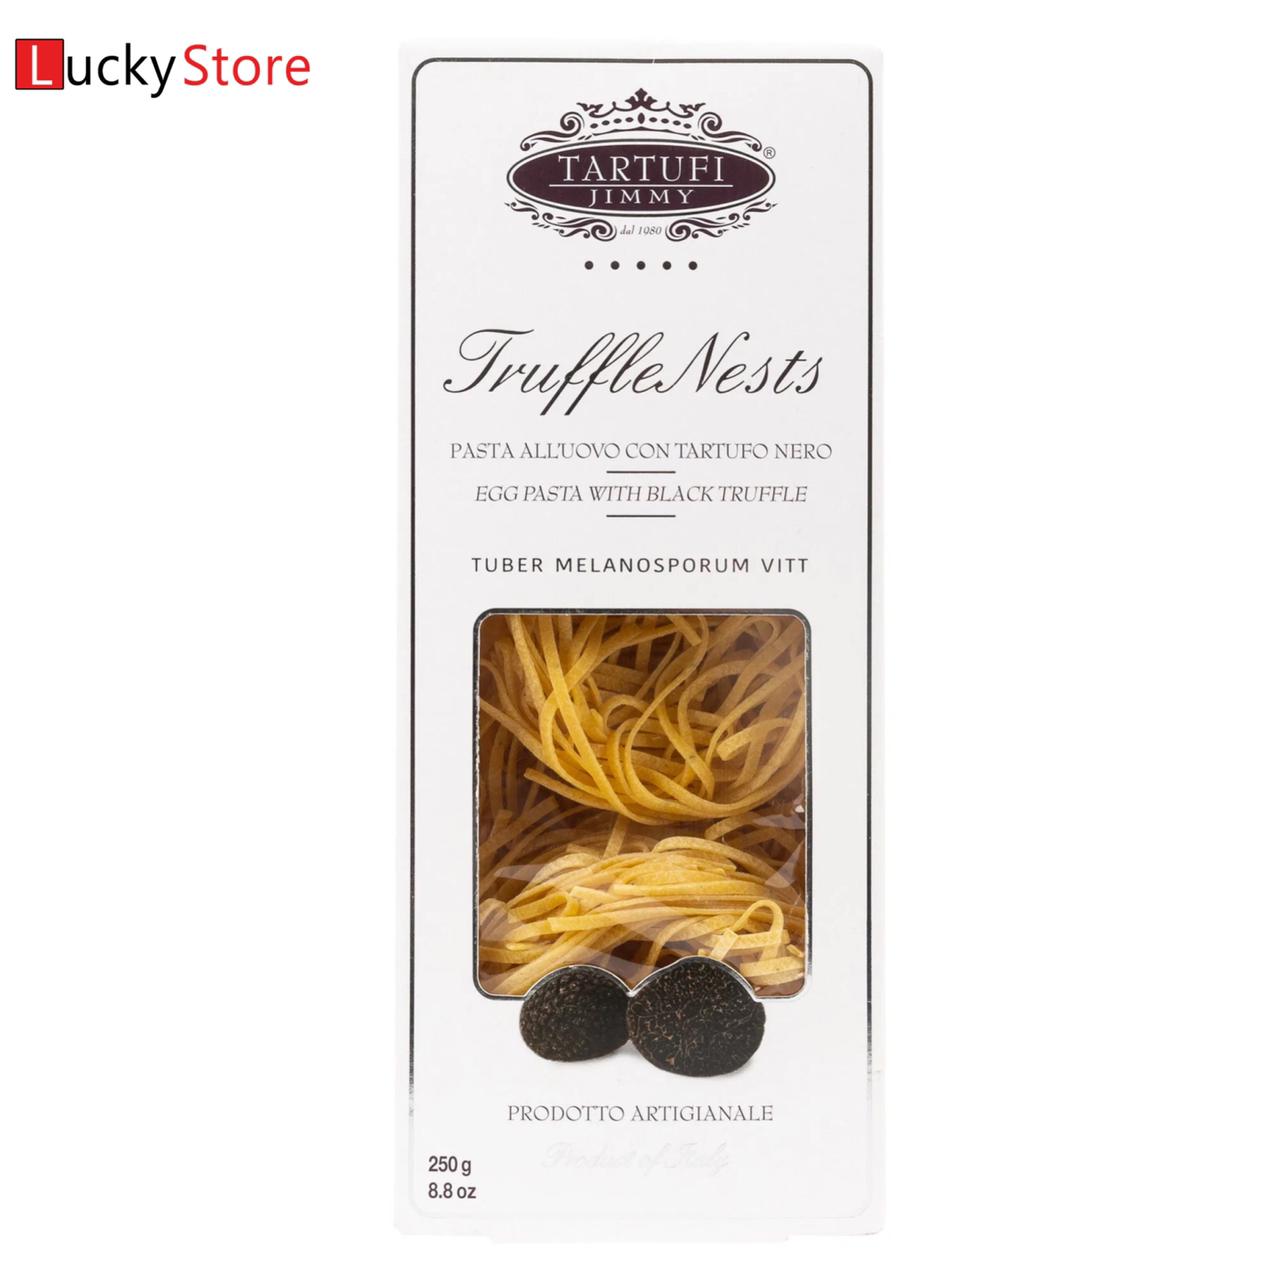 luckystore Pasta Jimmy Tartufi Truffle Nests Pasta 250g